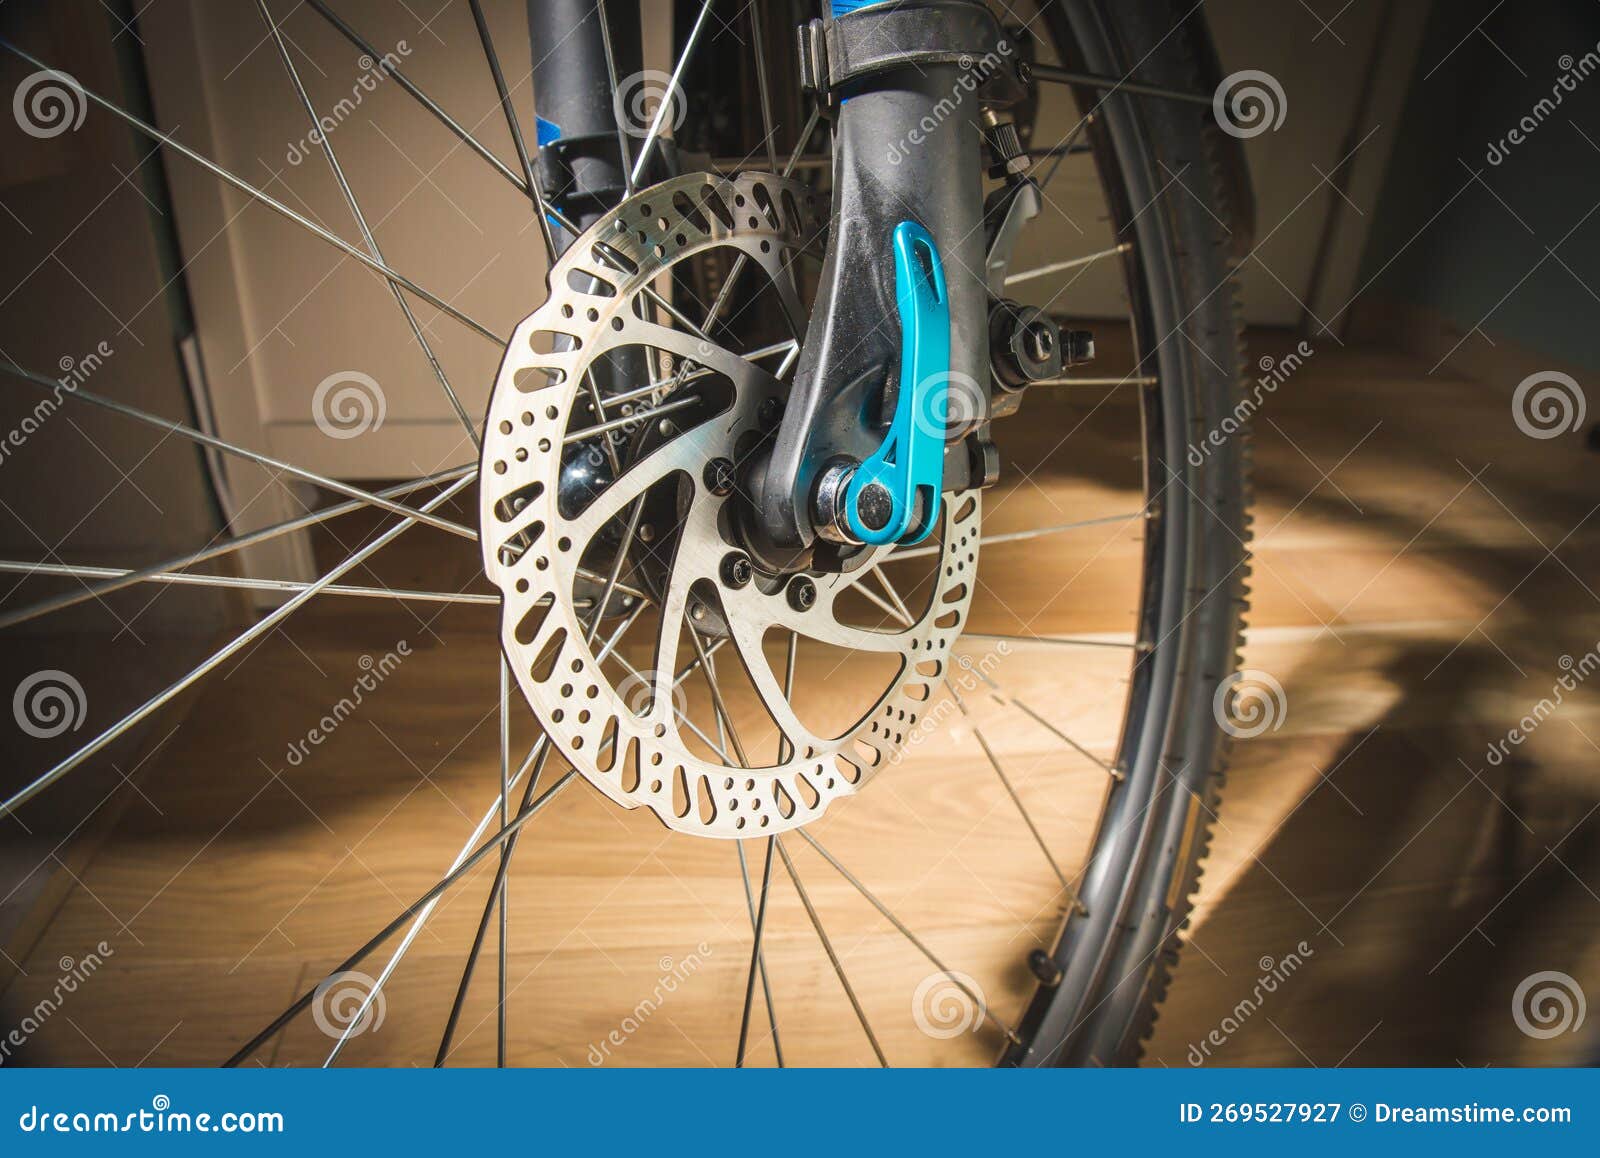 Fahrradzubehör stockbild. Bild von handschuhe, ausrüstung - 269527927